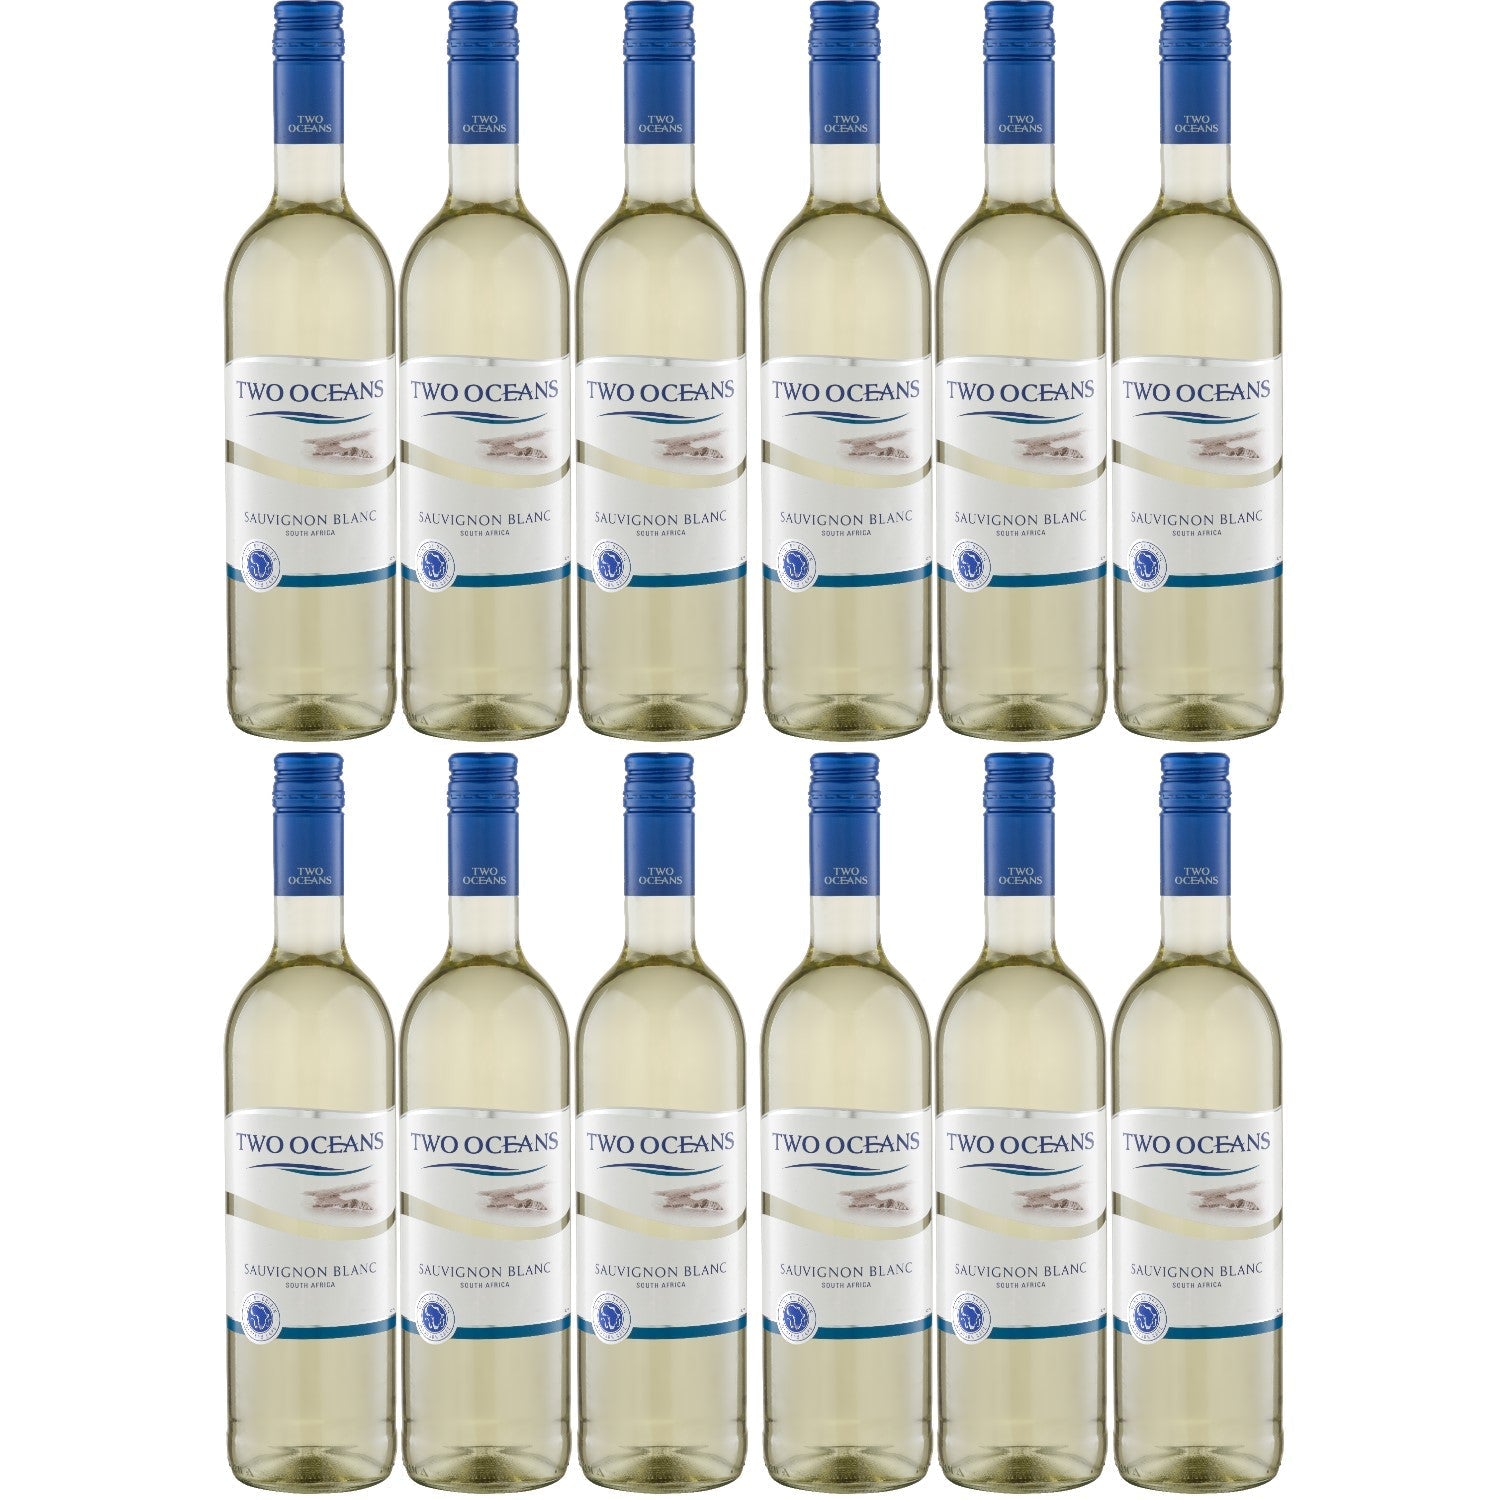 Two Oceans Sauvignon Blanc Weißwein Wein trocken Südafrika (12 x 0.75l) - Versanel -